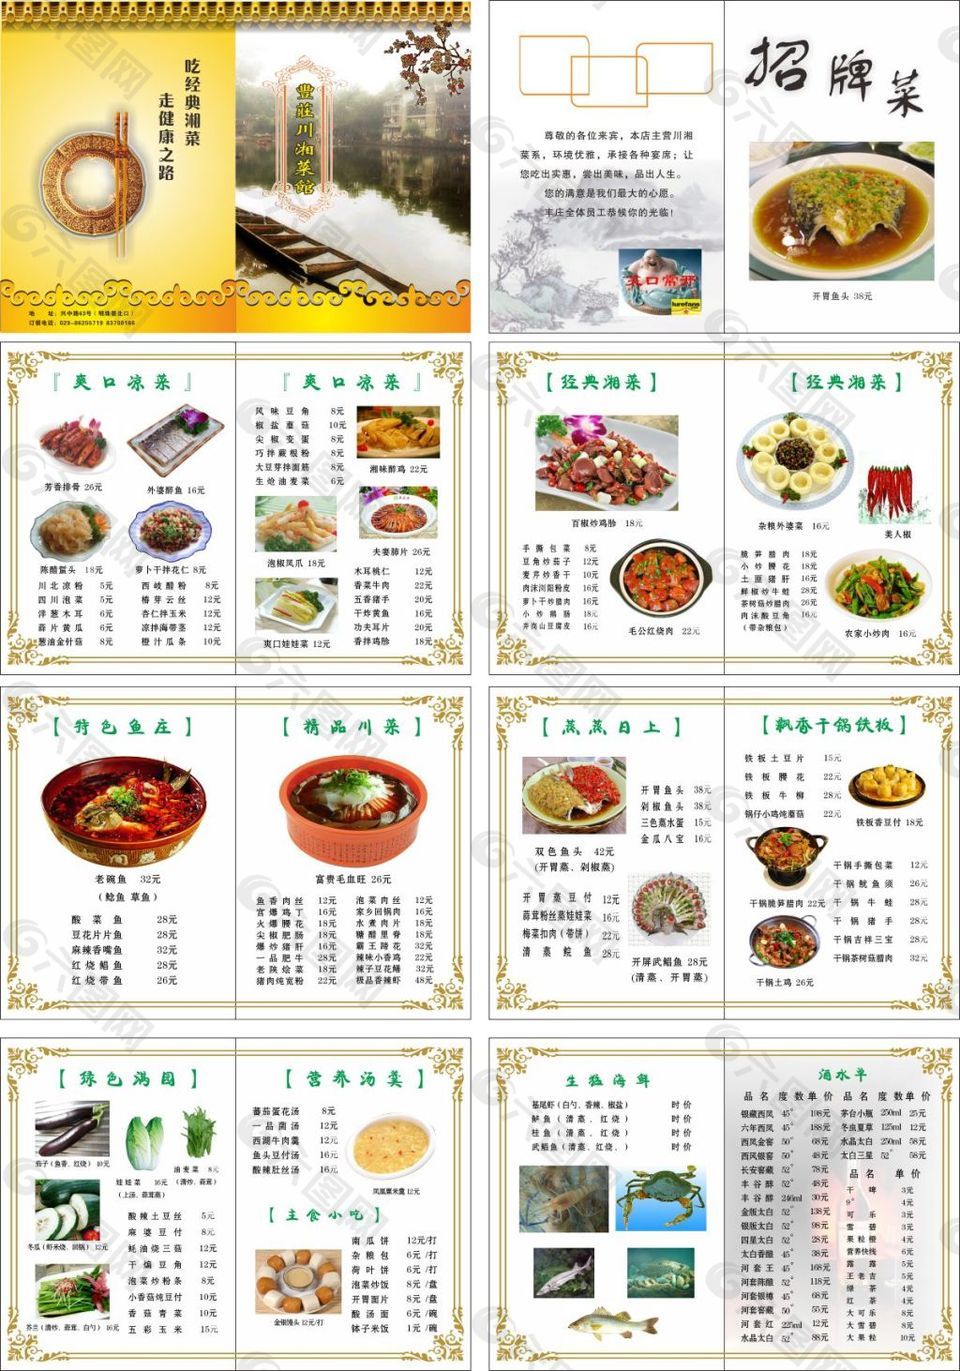 素材模板下载,本次平面广告 作品主题是 中式简约菜谱设计,编号是